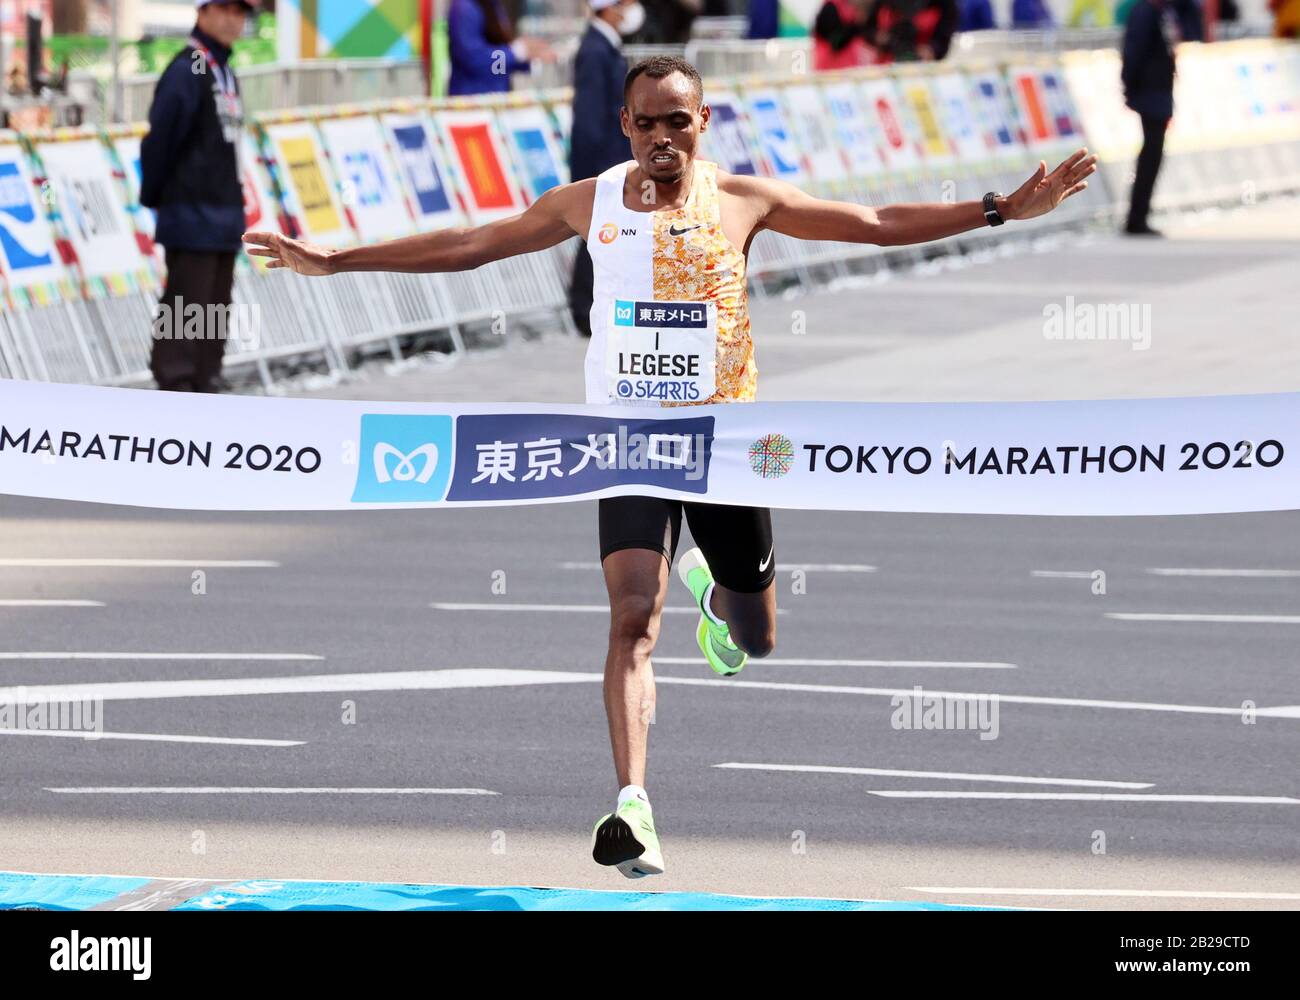 Tokyo, Japon. 1 mars 2020. Le Birhanu Legese d'Ethiopie traverse la ligne d'arrivée du Marathon de Tokyo à Tokyo le dimanche 1er mars 2020. Legese a remporté la course pour la deuxième année consécutive avec une durée de 2 heures 4 minutes 15 secondes. Crédit: Yoshio Tsunoda/Aflo/Alay Live News Banque D'Images